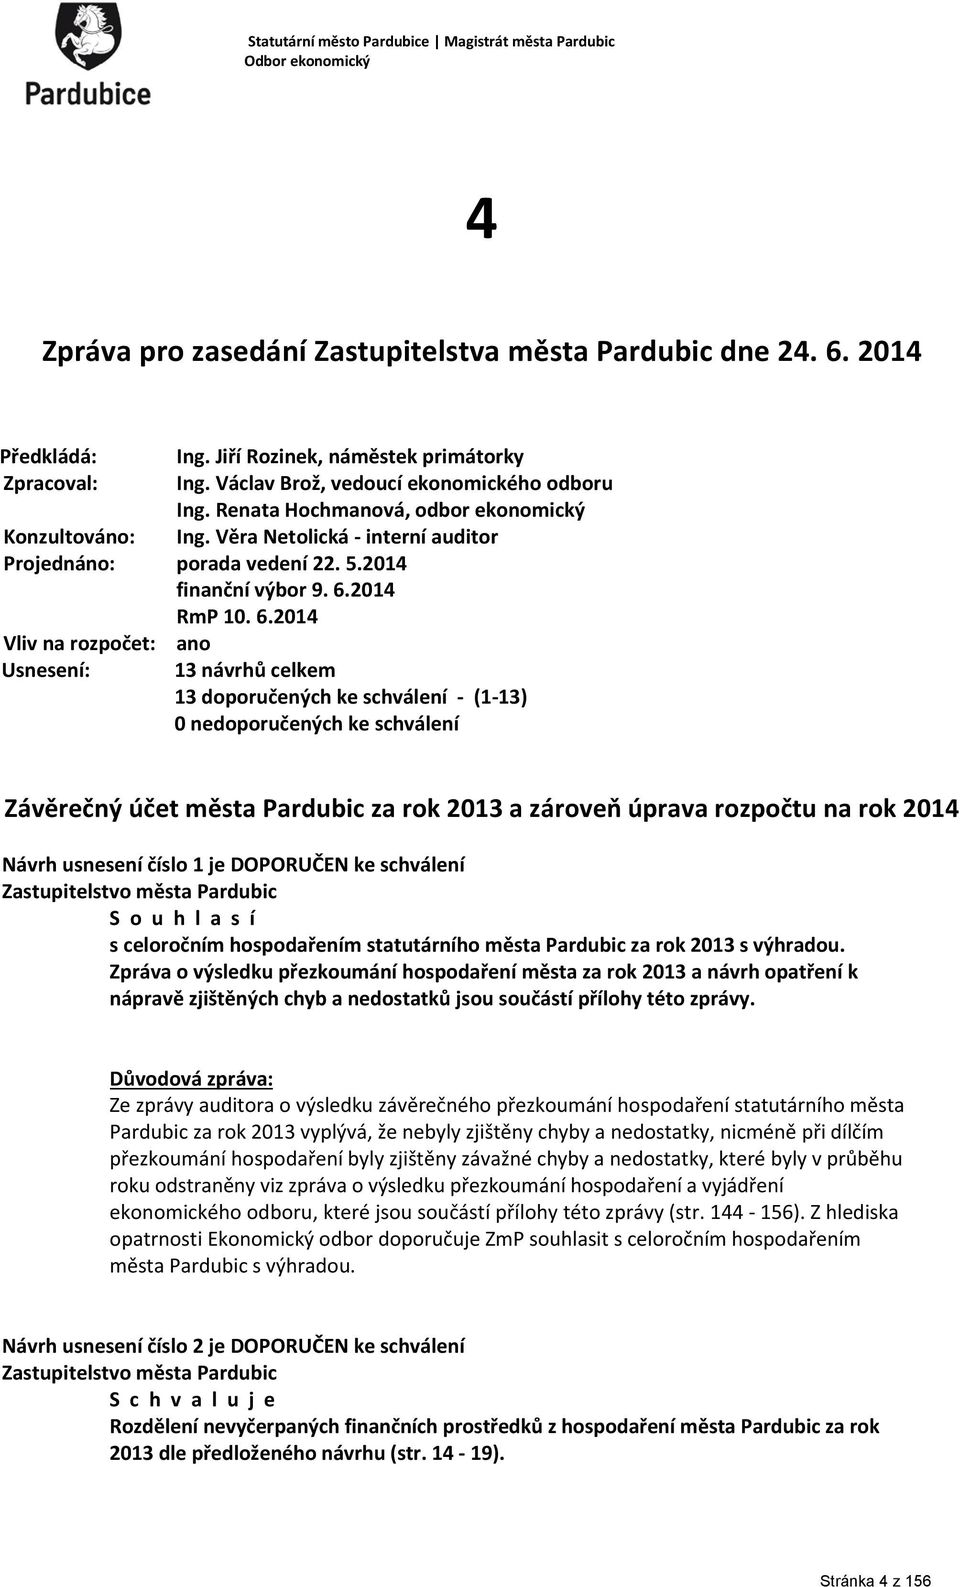 Věra Netolická - interní auditor Konzultováno: Projednáno: porada vedení 22. 5.2014 finanční výbor 9. 6.